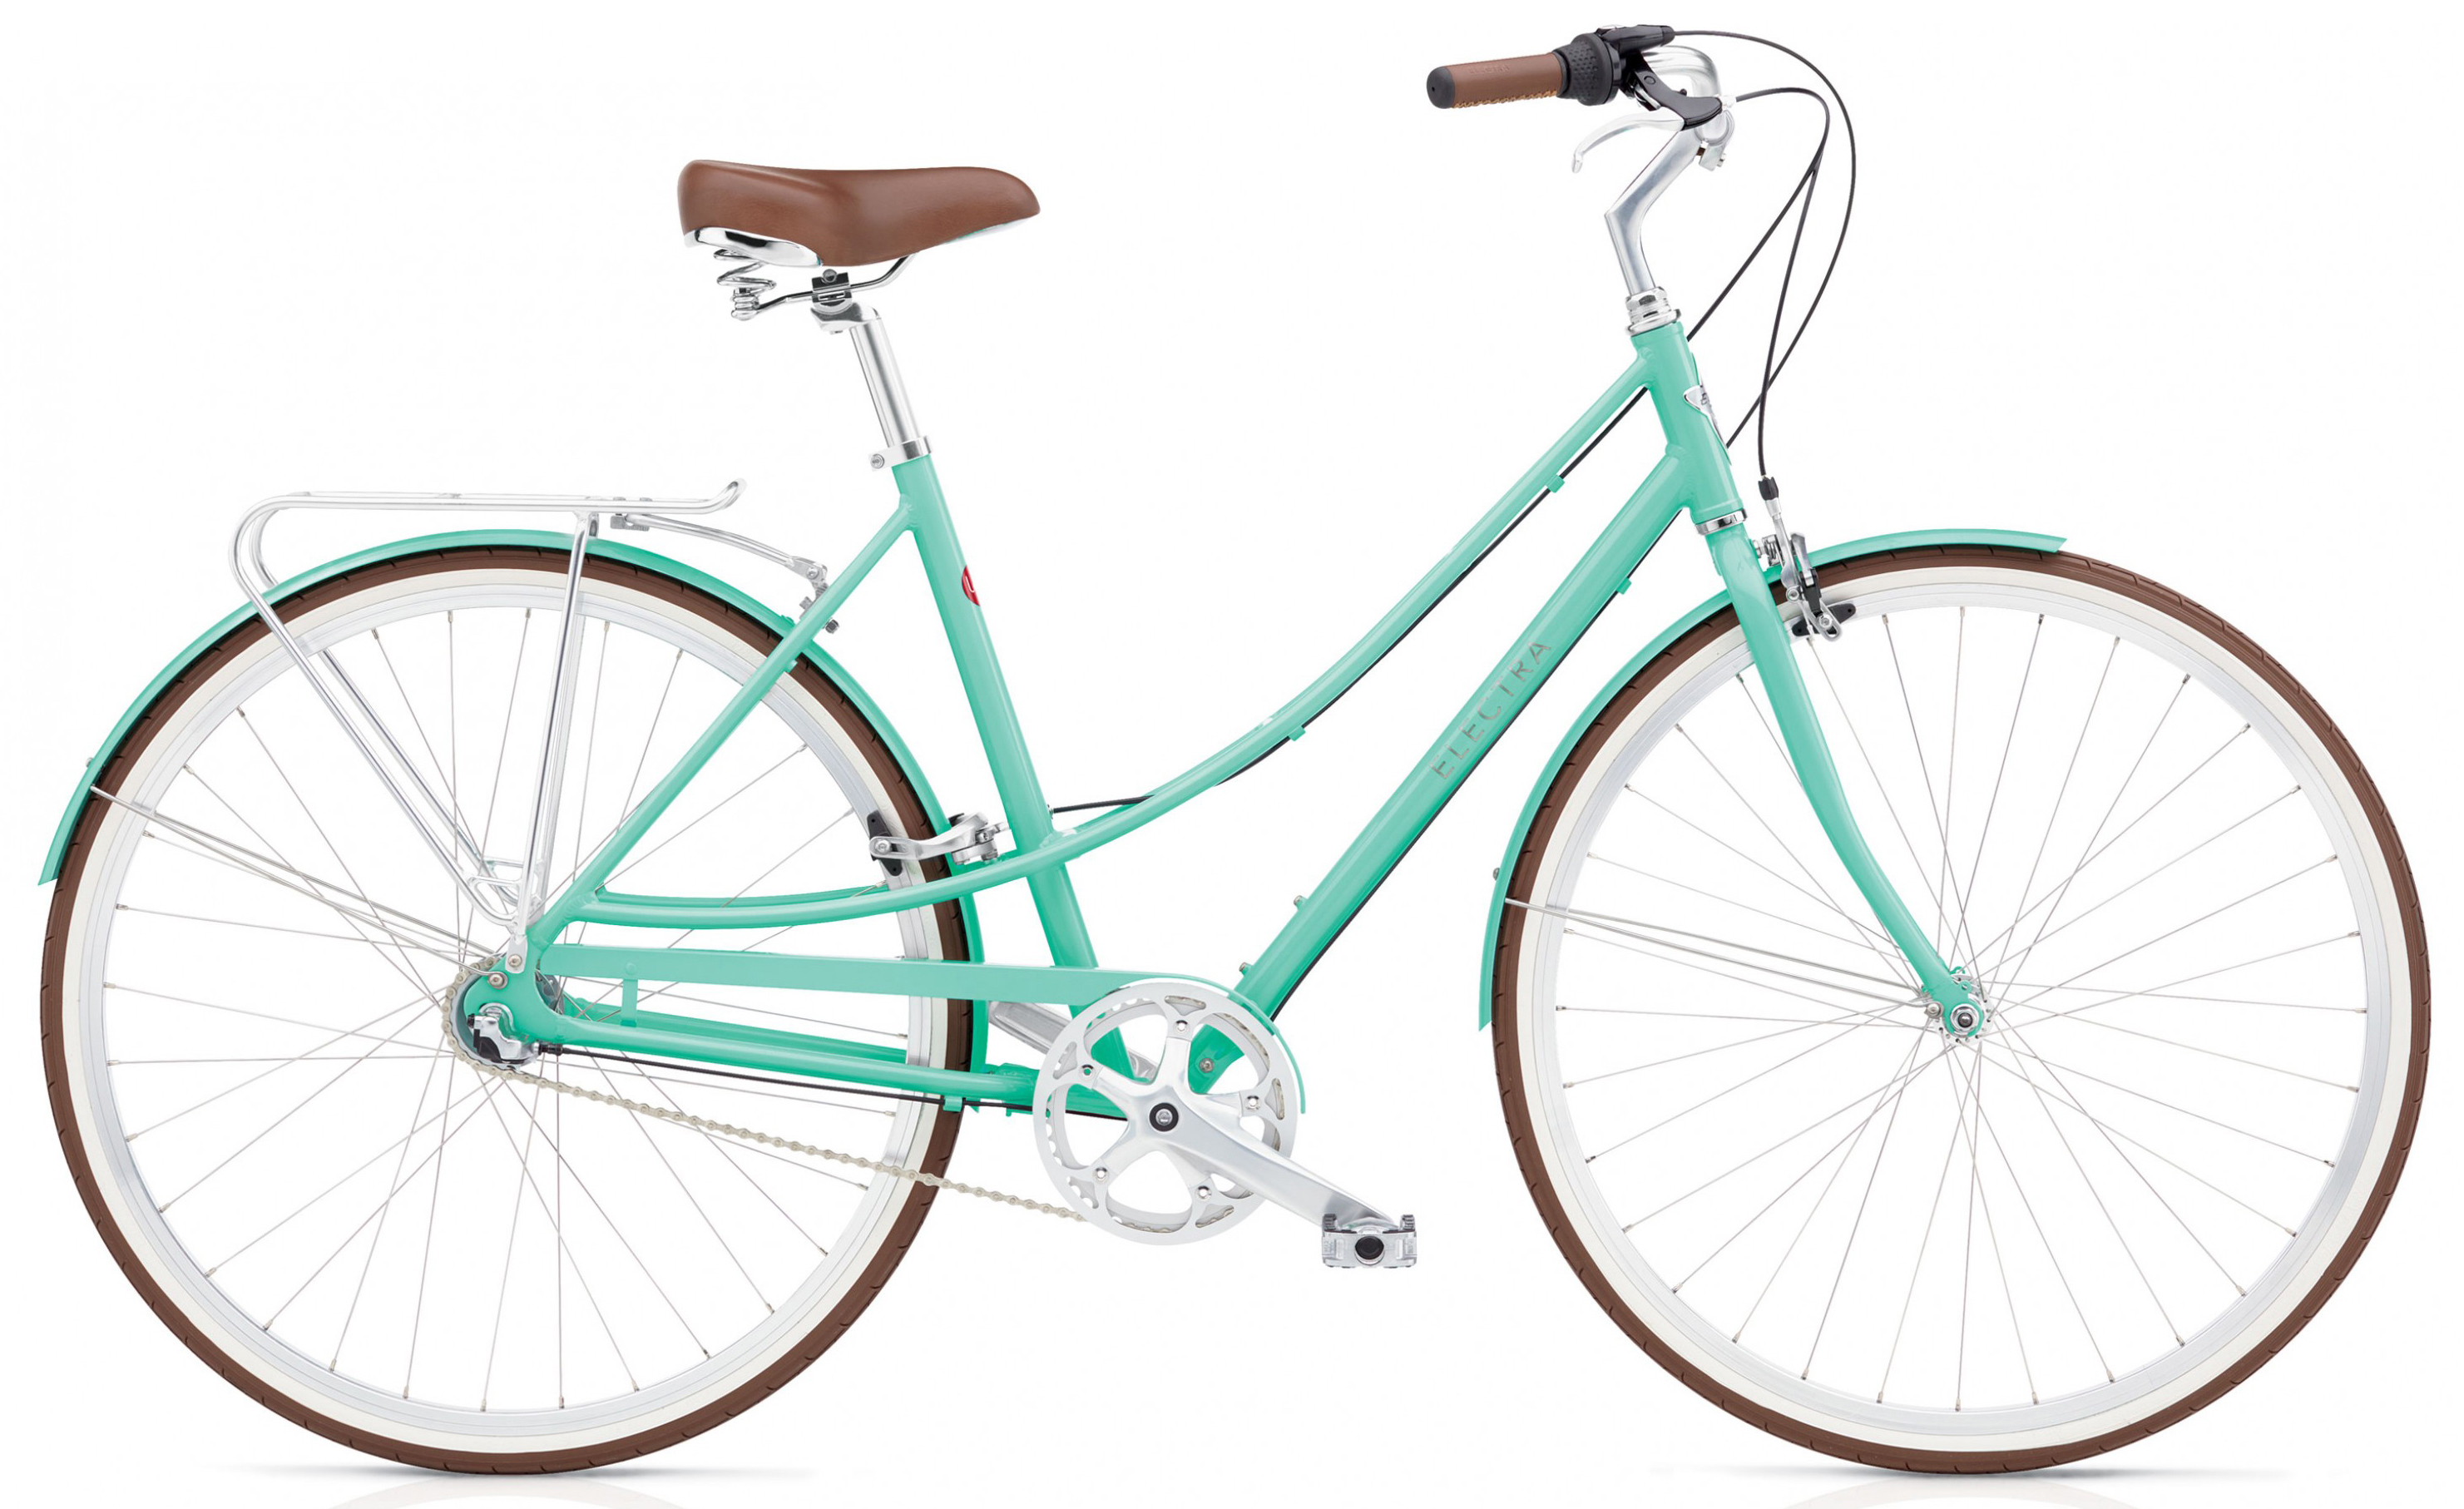  Отзывы о Женском велосипеде Electra Loft 3i 2019